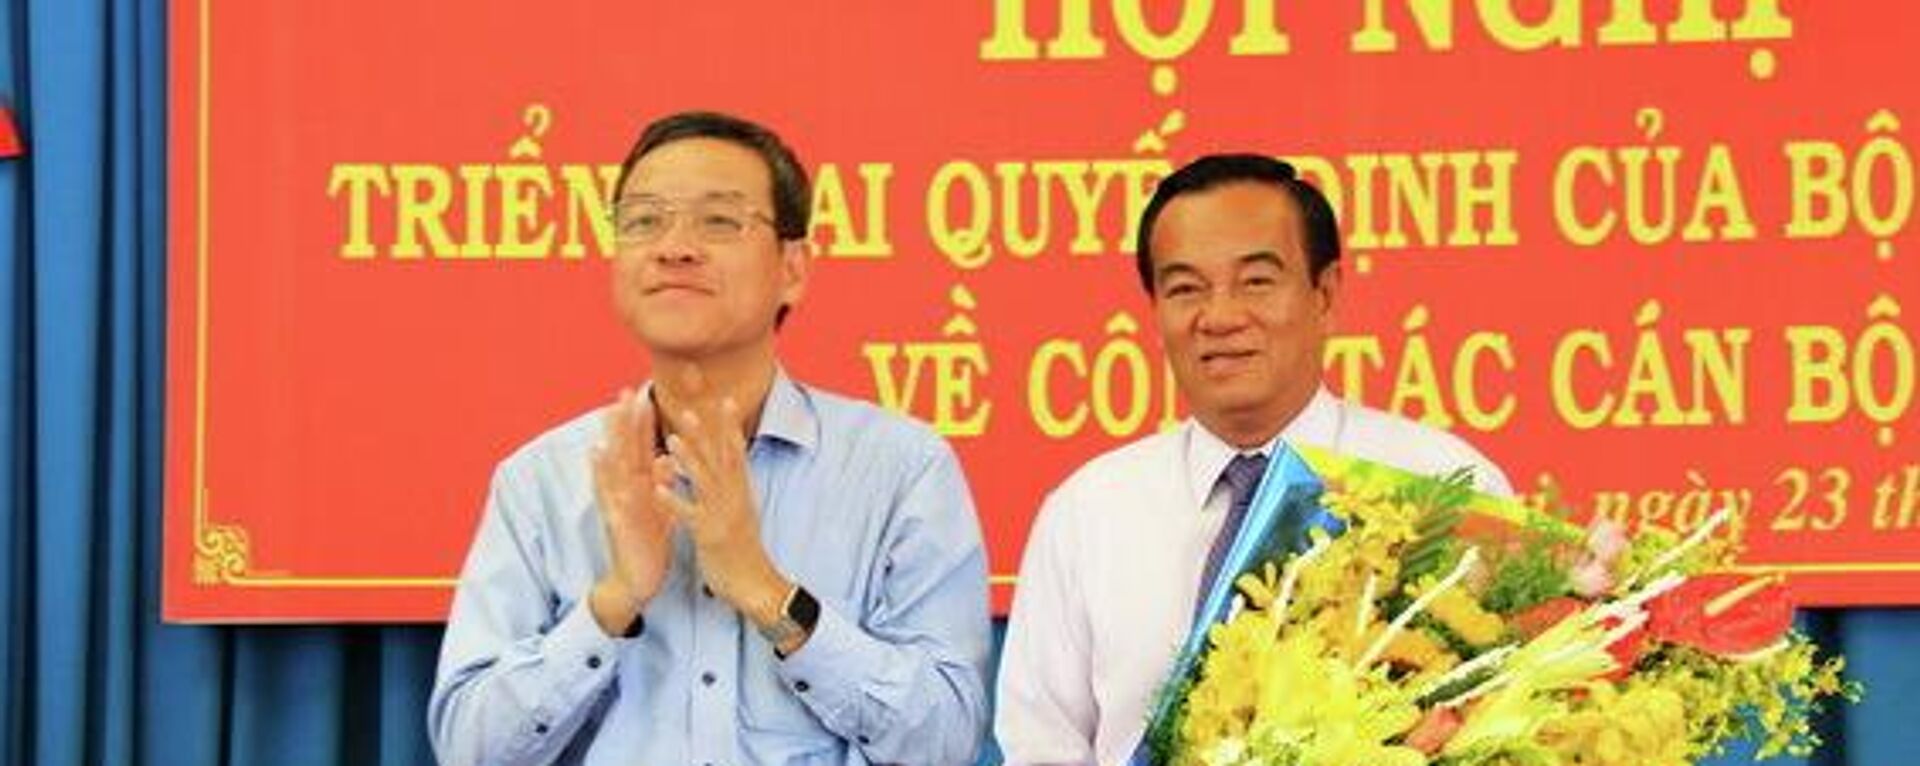 Chủ tịch Đinh Quốc Thái và Trần Đình Thành Bí thư Tỉnh ủy Đồng Nai tại cuộc họp giao ban năm 2016 - Sputnik Việt Nam, 1920, 19.10.2022